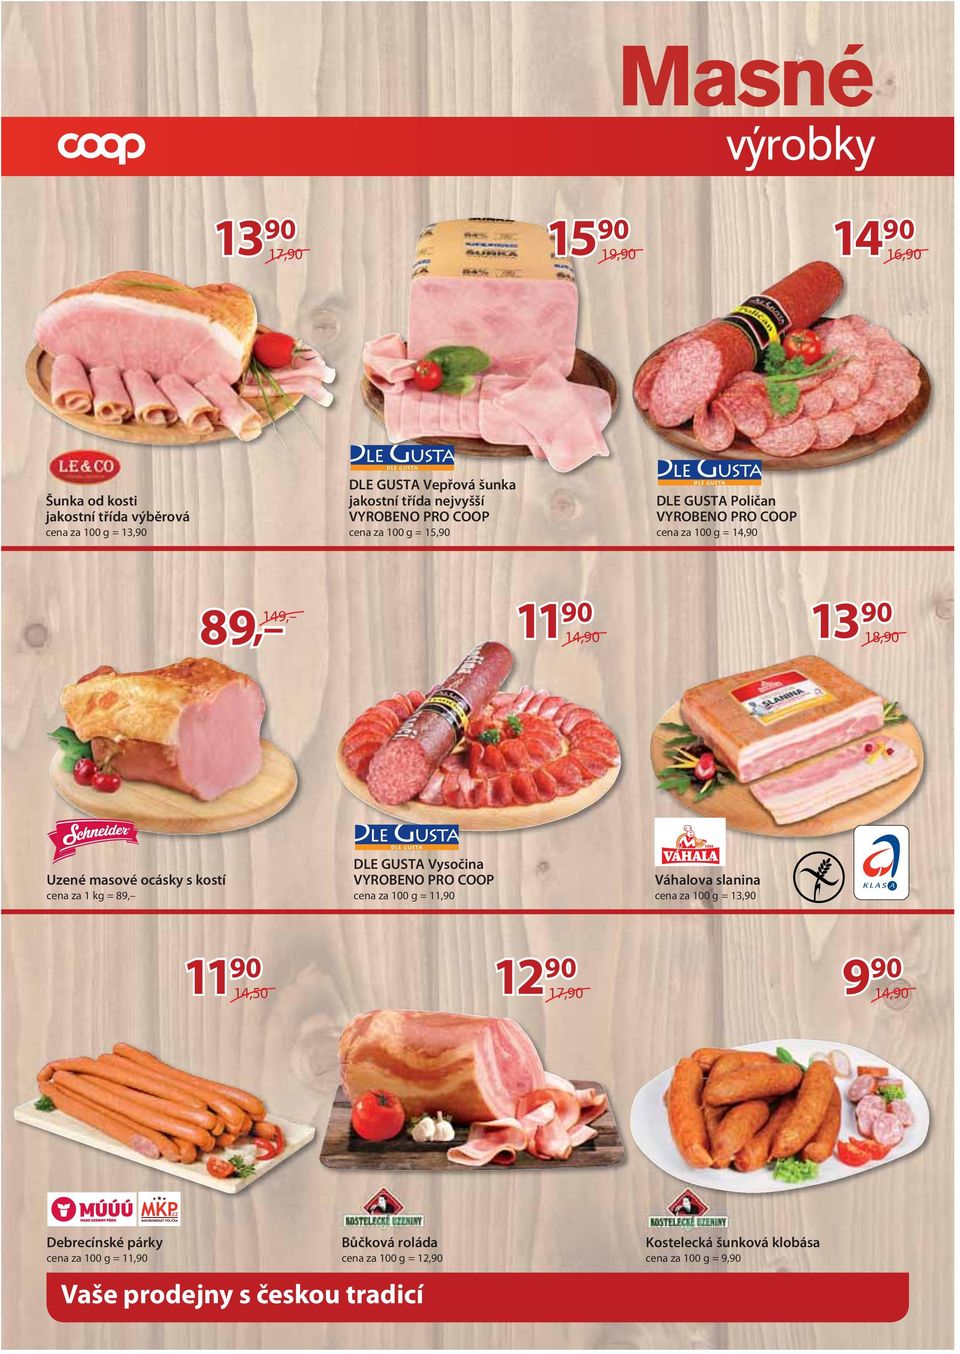 cena za 1 kg = 89, DLE GUSTA Vysočina cena za 100 g = 11,90 Váhalova slanina cena za 100 g = 14,50 9 90 14,90 Debrecínské